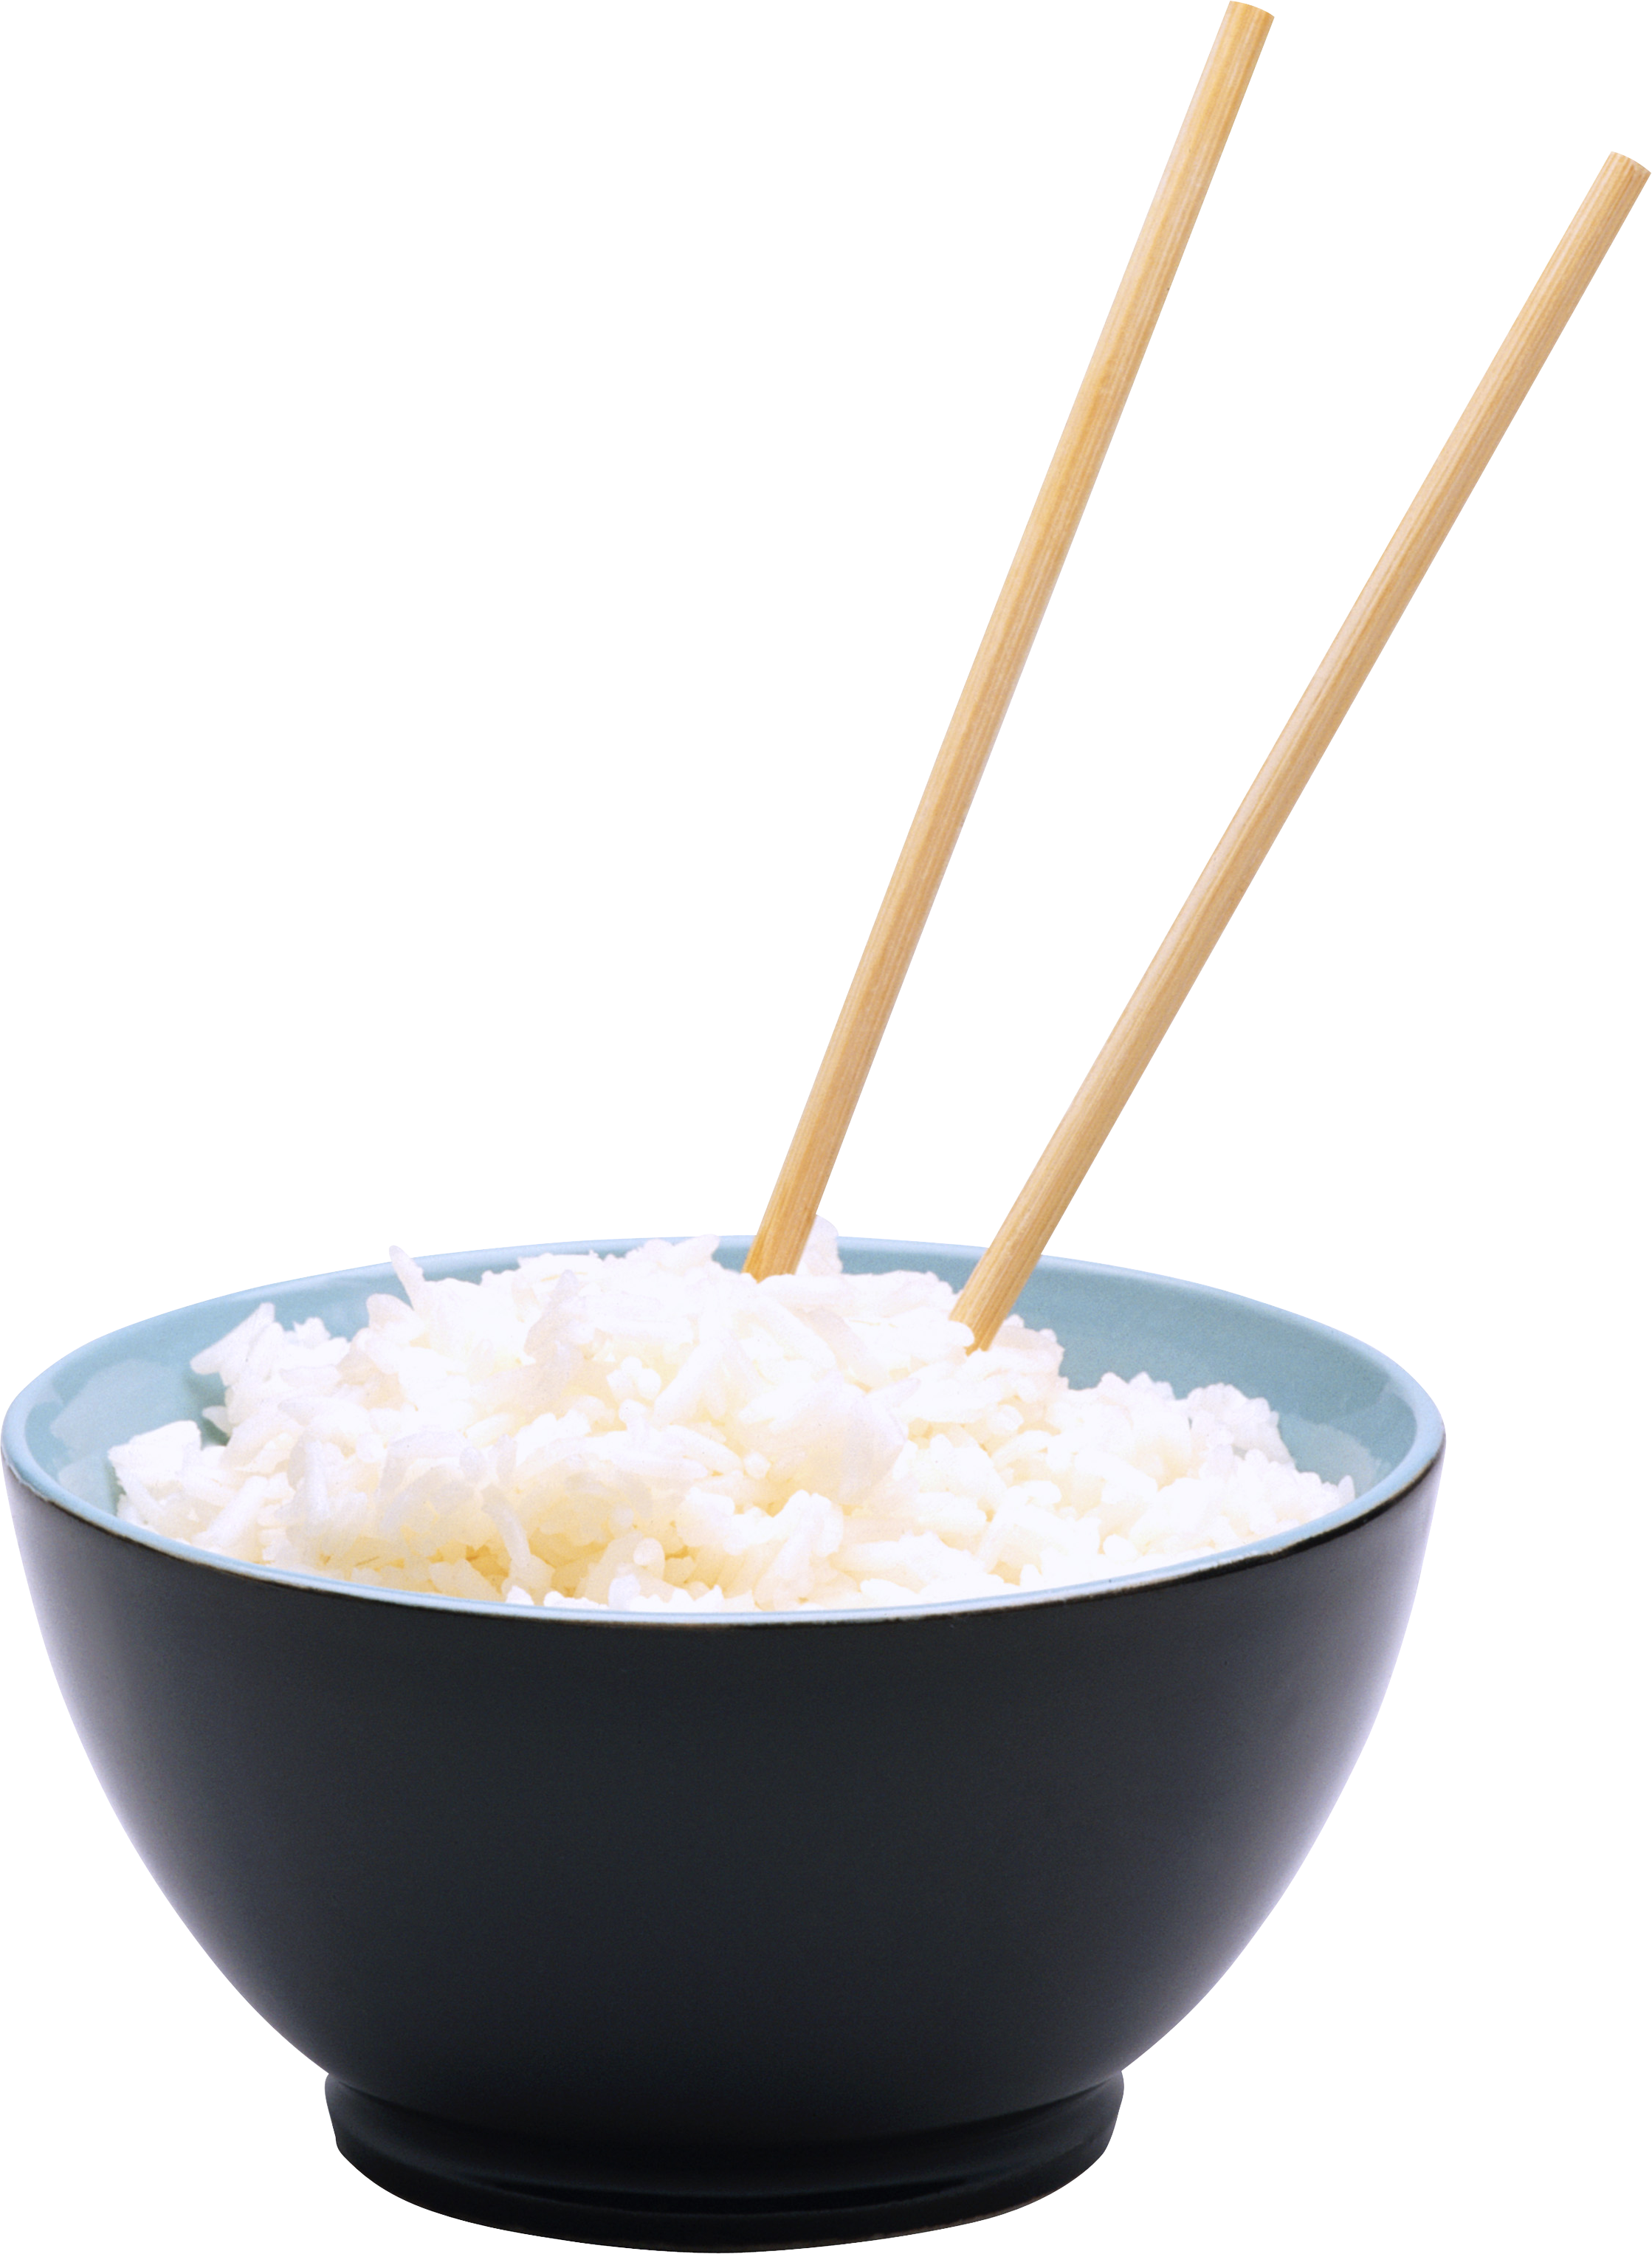 चावल